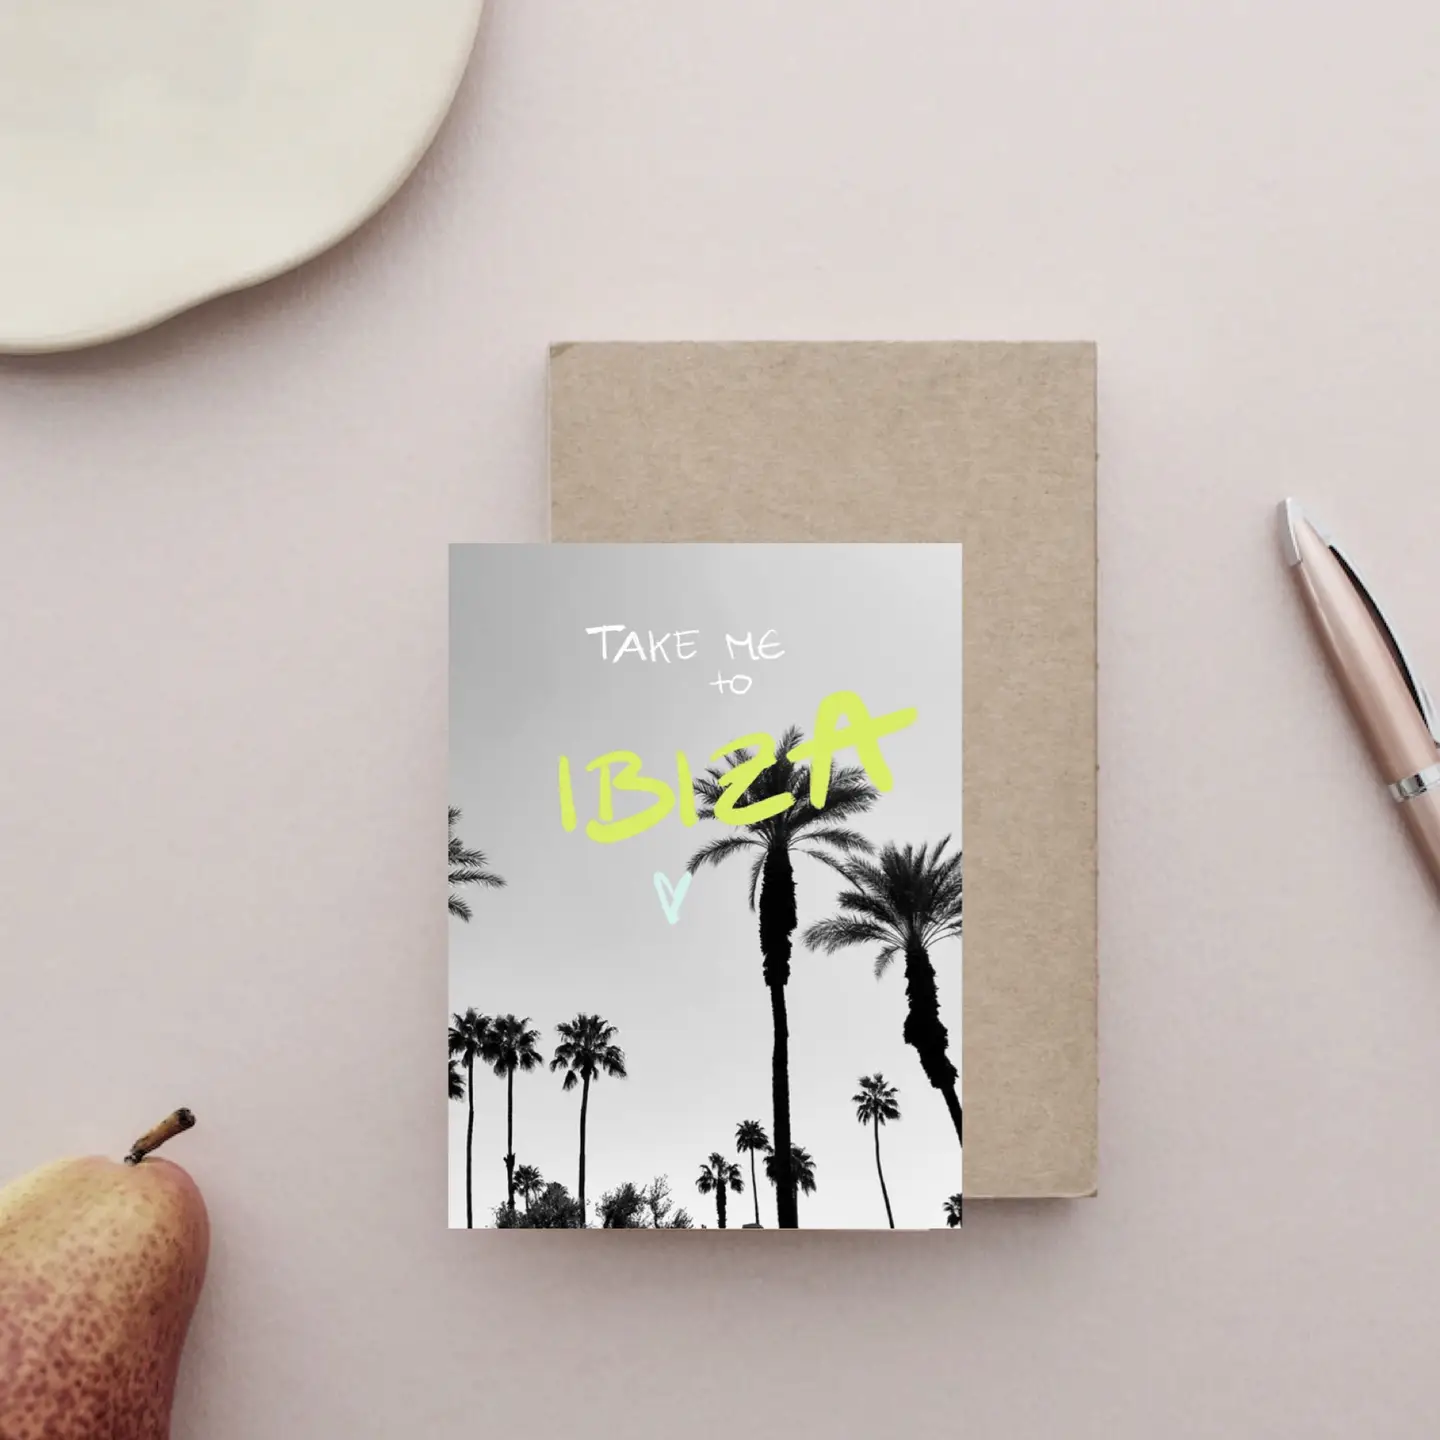 Postkarte "Take me to Ibiza "  von Ute Arnold   